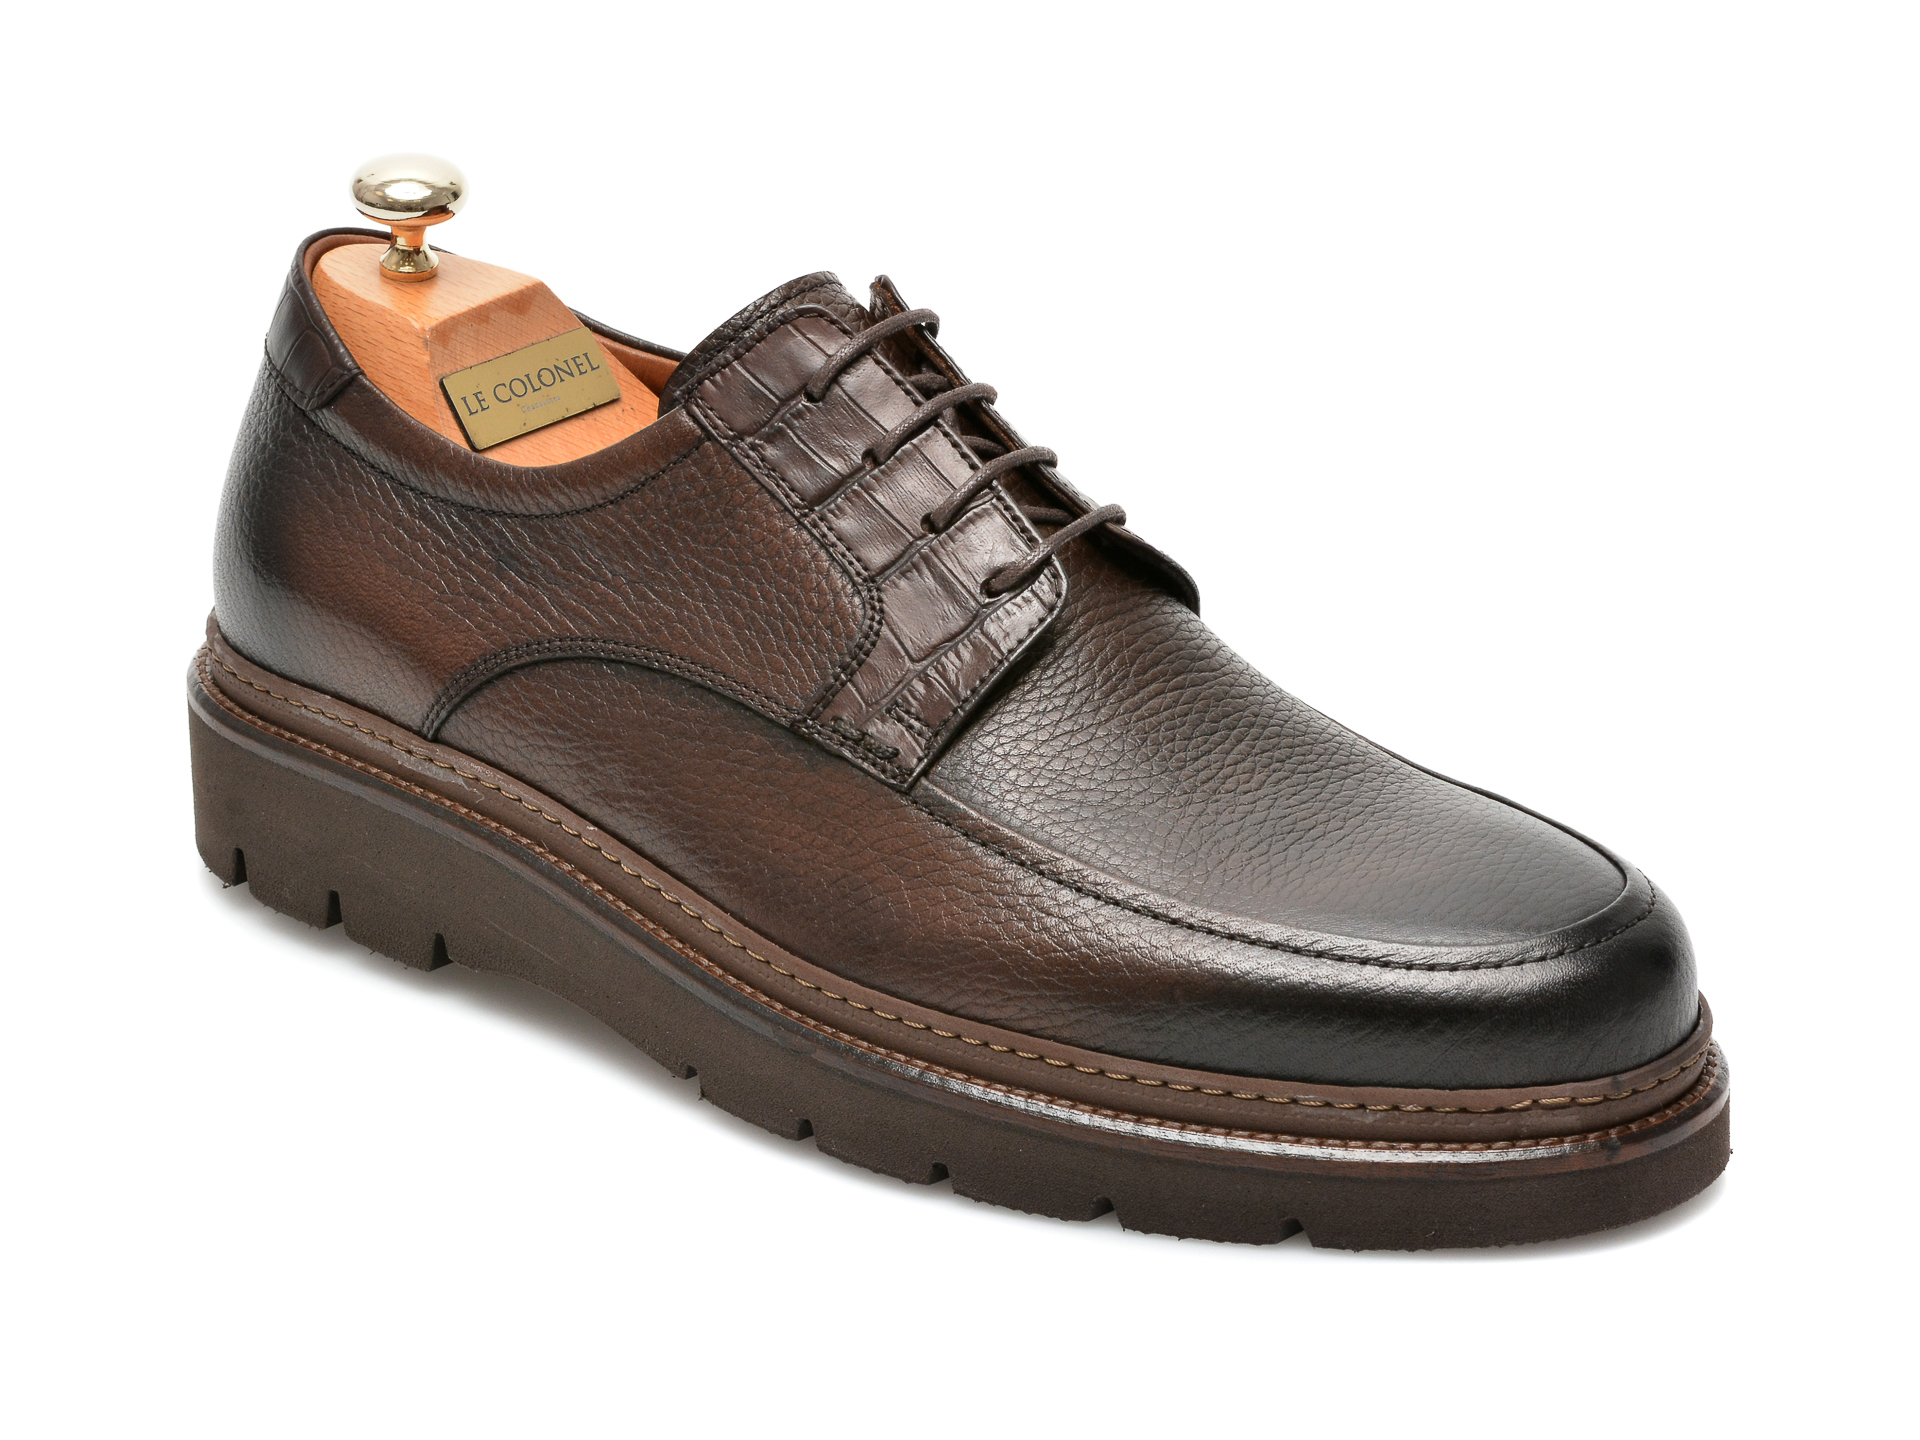 Pantofi LE COLONEL maro, 47302, din piele naturala 2023 ❤️ Pret Super tezyo.ro imagine noua 2022